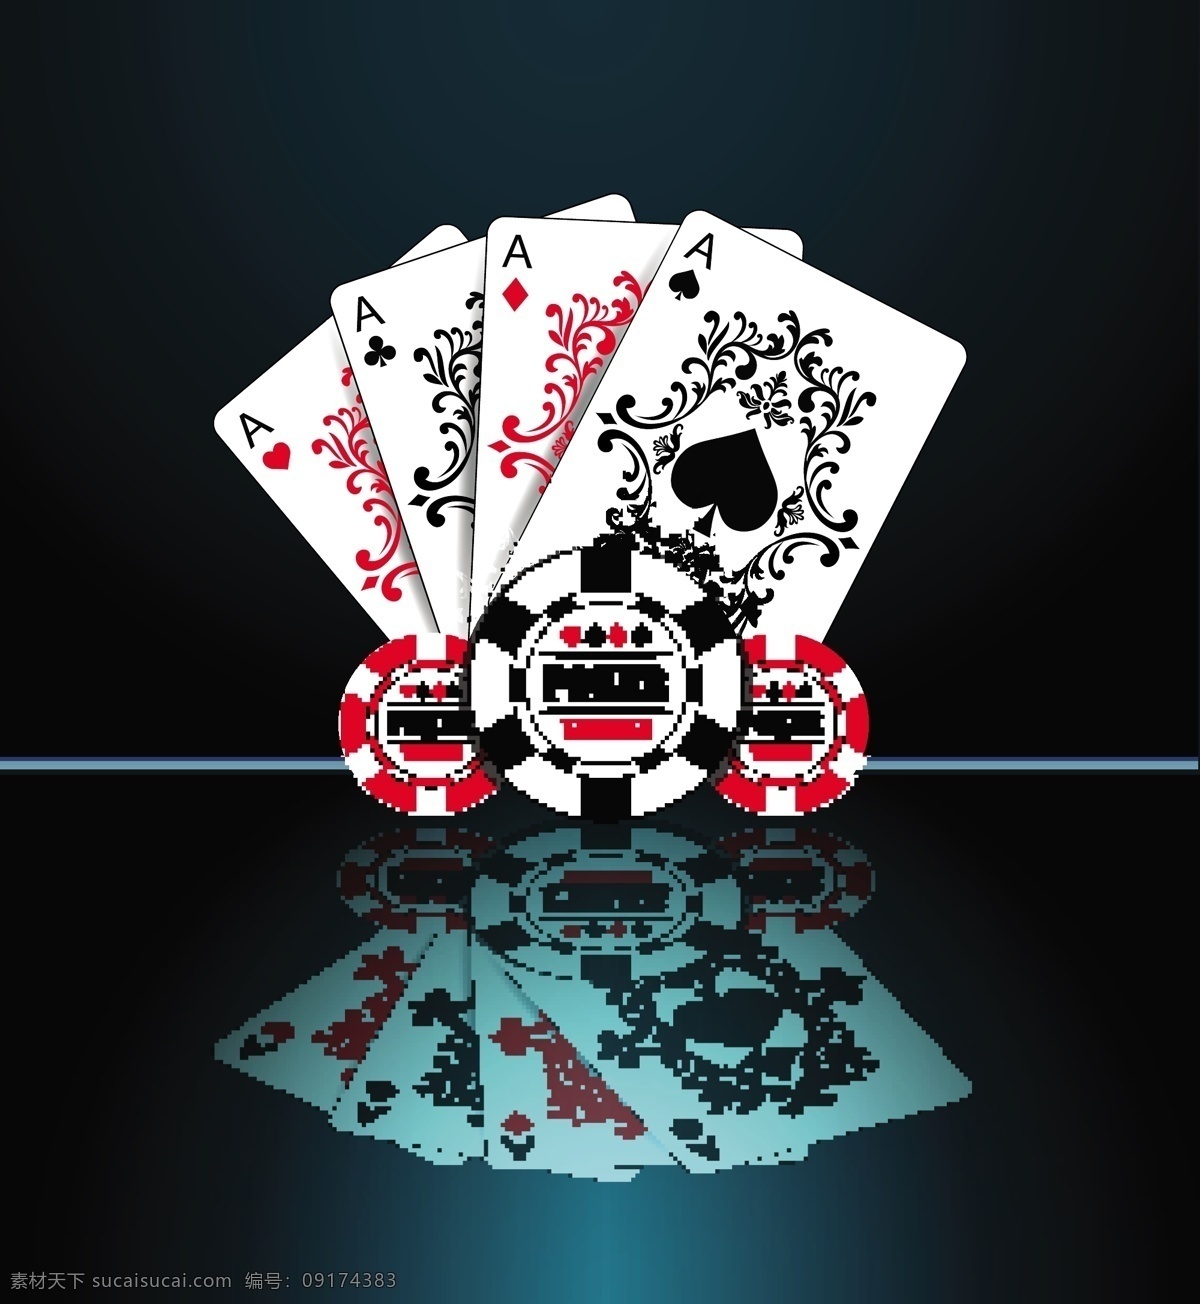 漂亮扑克牌 筹码 德州扑克 扑克牌 德州扑克筹码 扑克牌设计 底纹边框 背景底纹 黑色